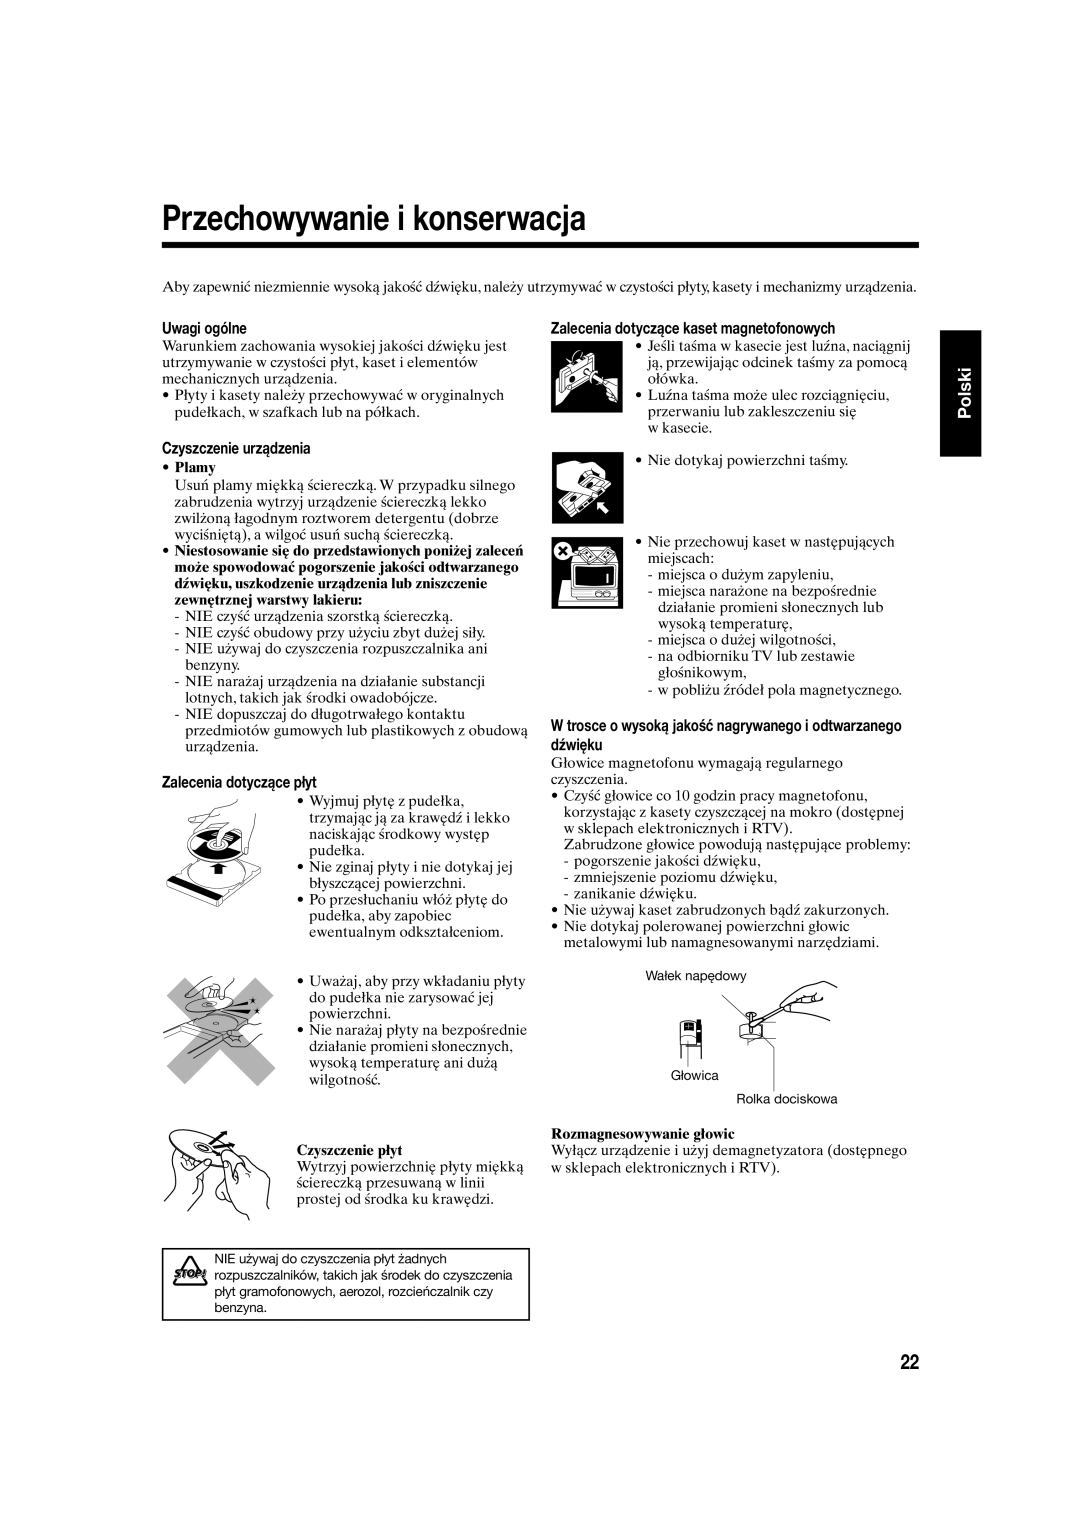 JVC UX-S10 manual Przechowywanie i konserwacja, Polski, Uwagi ogólne, Zalecenia dotyczące kaset magnetofonowych, Plamy 